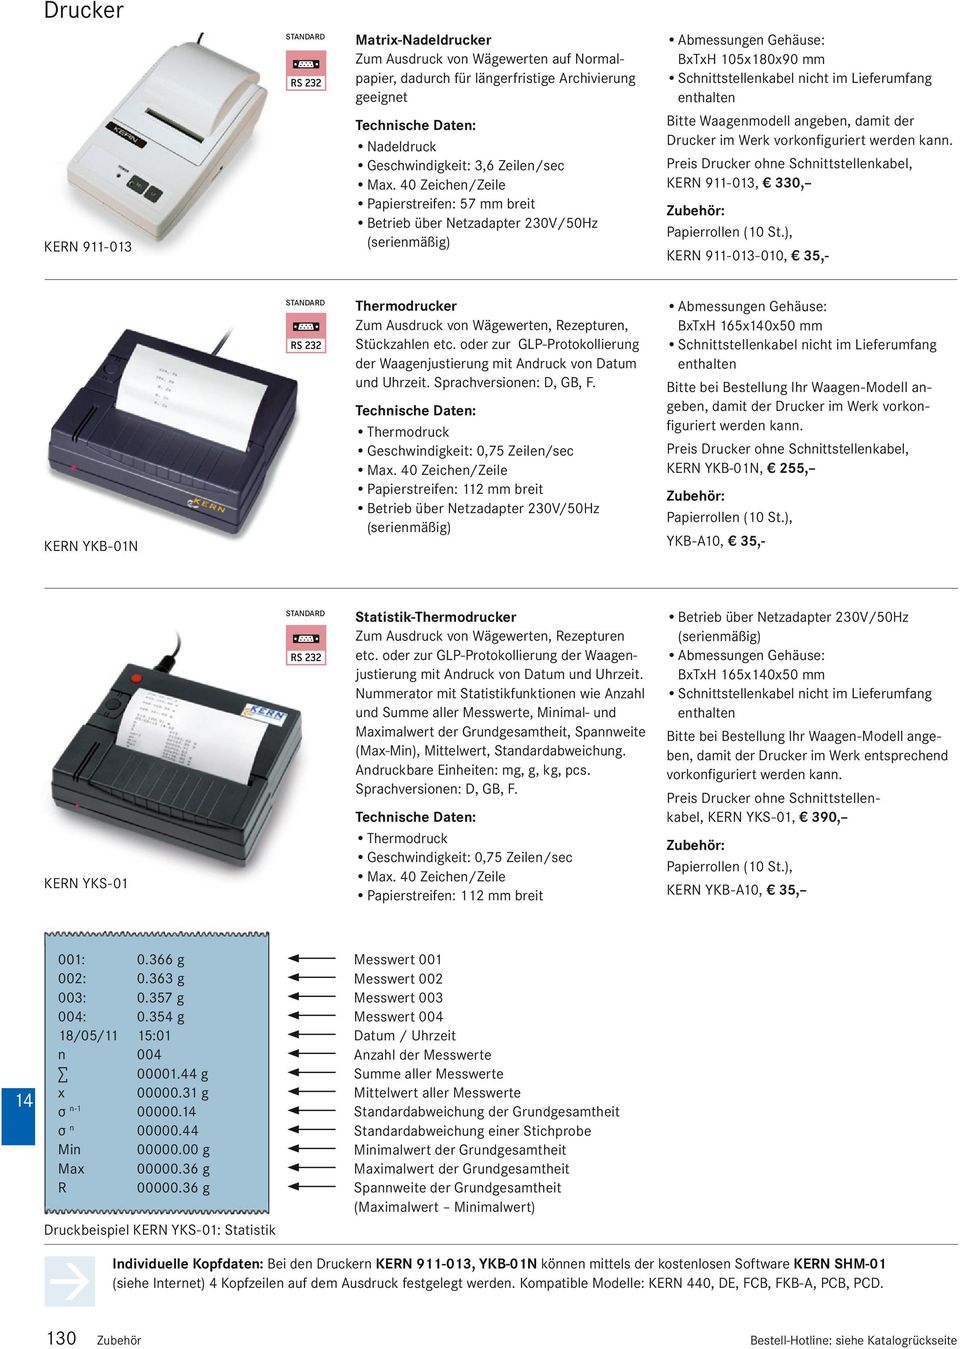 BxTxH 165x0x50 mm Statistik-Thermodrucker Zum Ausdruck von Wägewerten, Rezepturen etc. oder zur GLP-Protokollierung der Waagenjustierung mit Andruck von Datum und Uhrzeit.